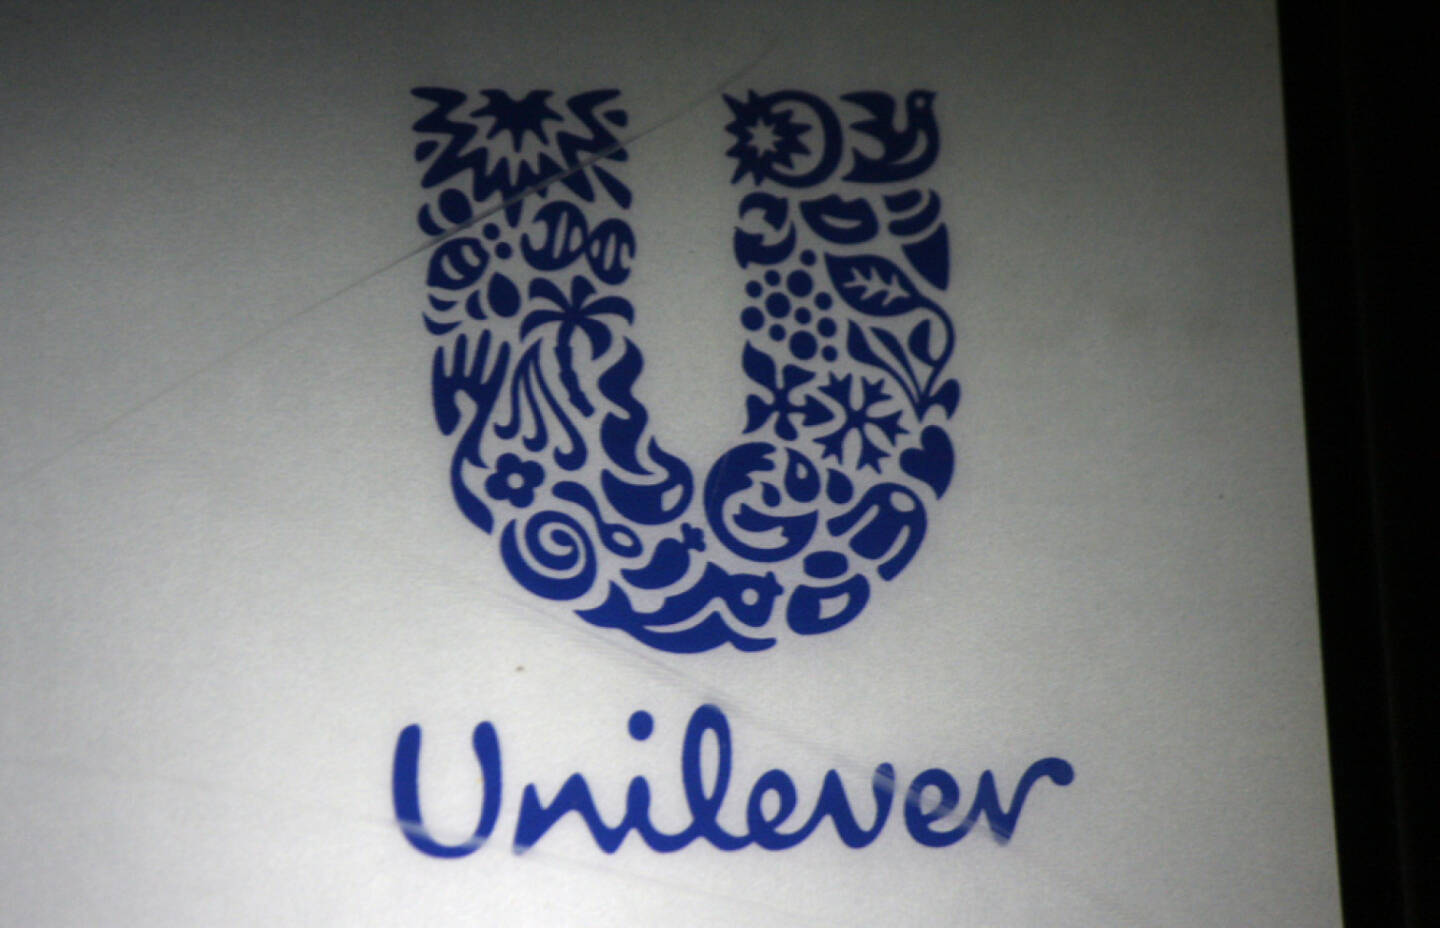 Unilever, <a href=http://www.shutterstock.com/gallery-320989p1.html?cr=00&pl=edit-00>360b</a> / <a href=http://www.shutterstock.com/?cr=00&pl=edit-00>Shutterstock.com</a> , 360b / Shutterstock.com